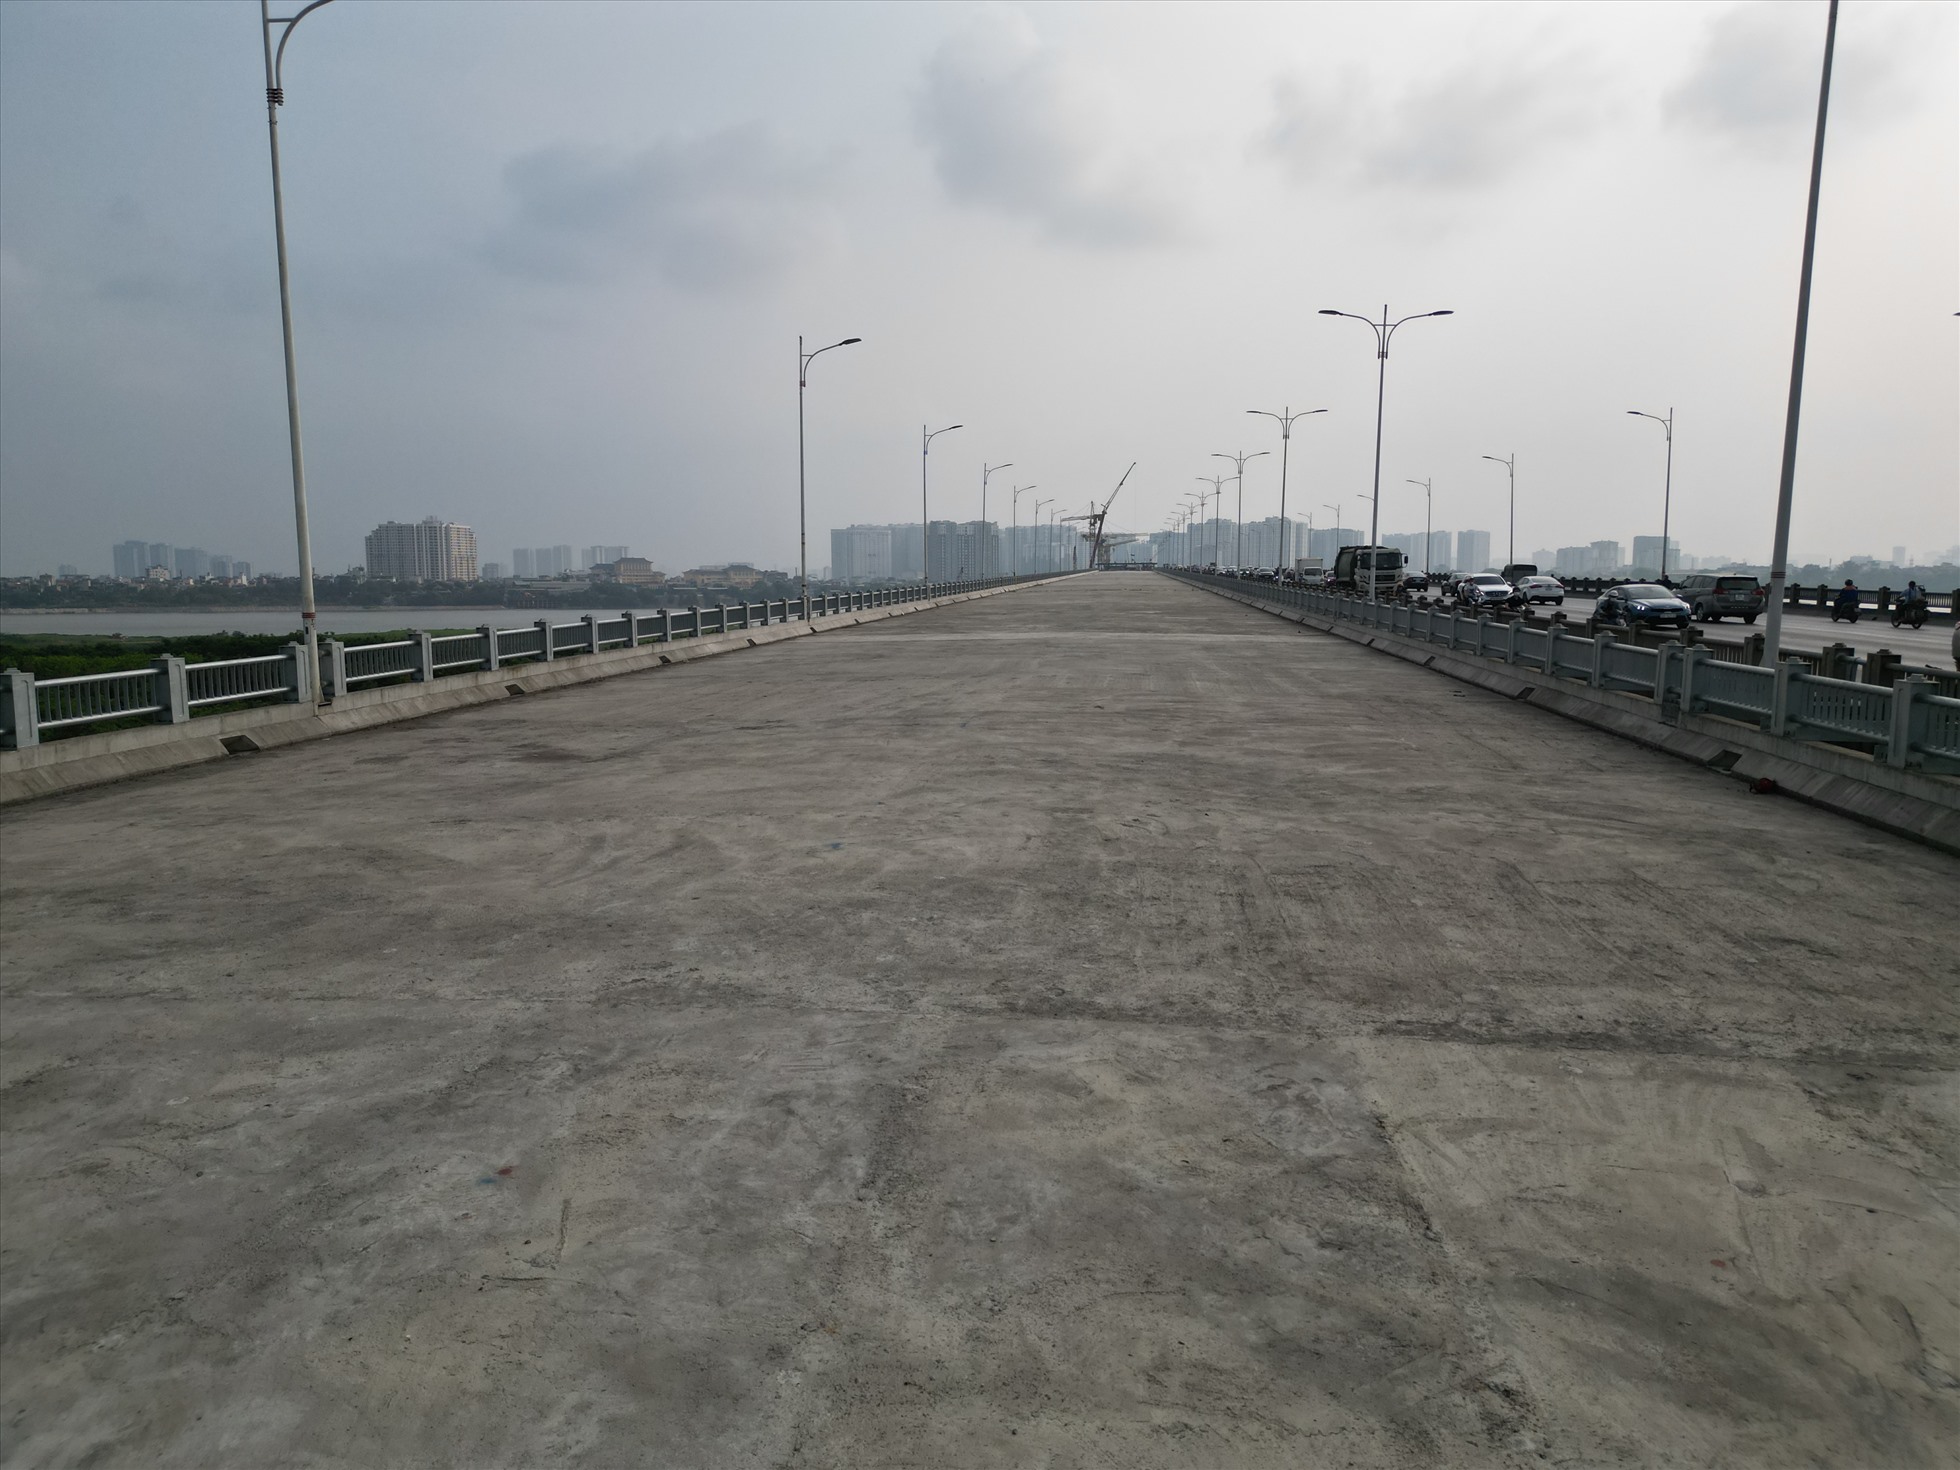 Sau khi hoàn thành giai đoạn 2, cầu Vĩnh Tuy sẽ là cầu có chiều rộng mặt cắt ngang lớn nhất Hà Nội với 8 làn xe ô tô (40 m).